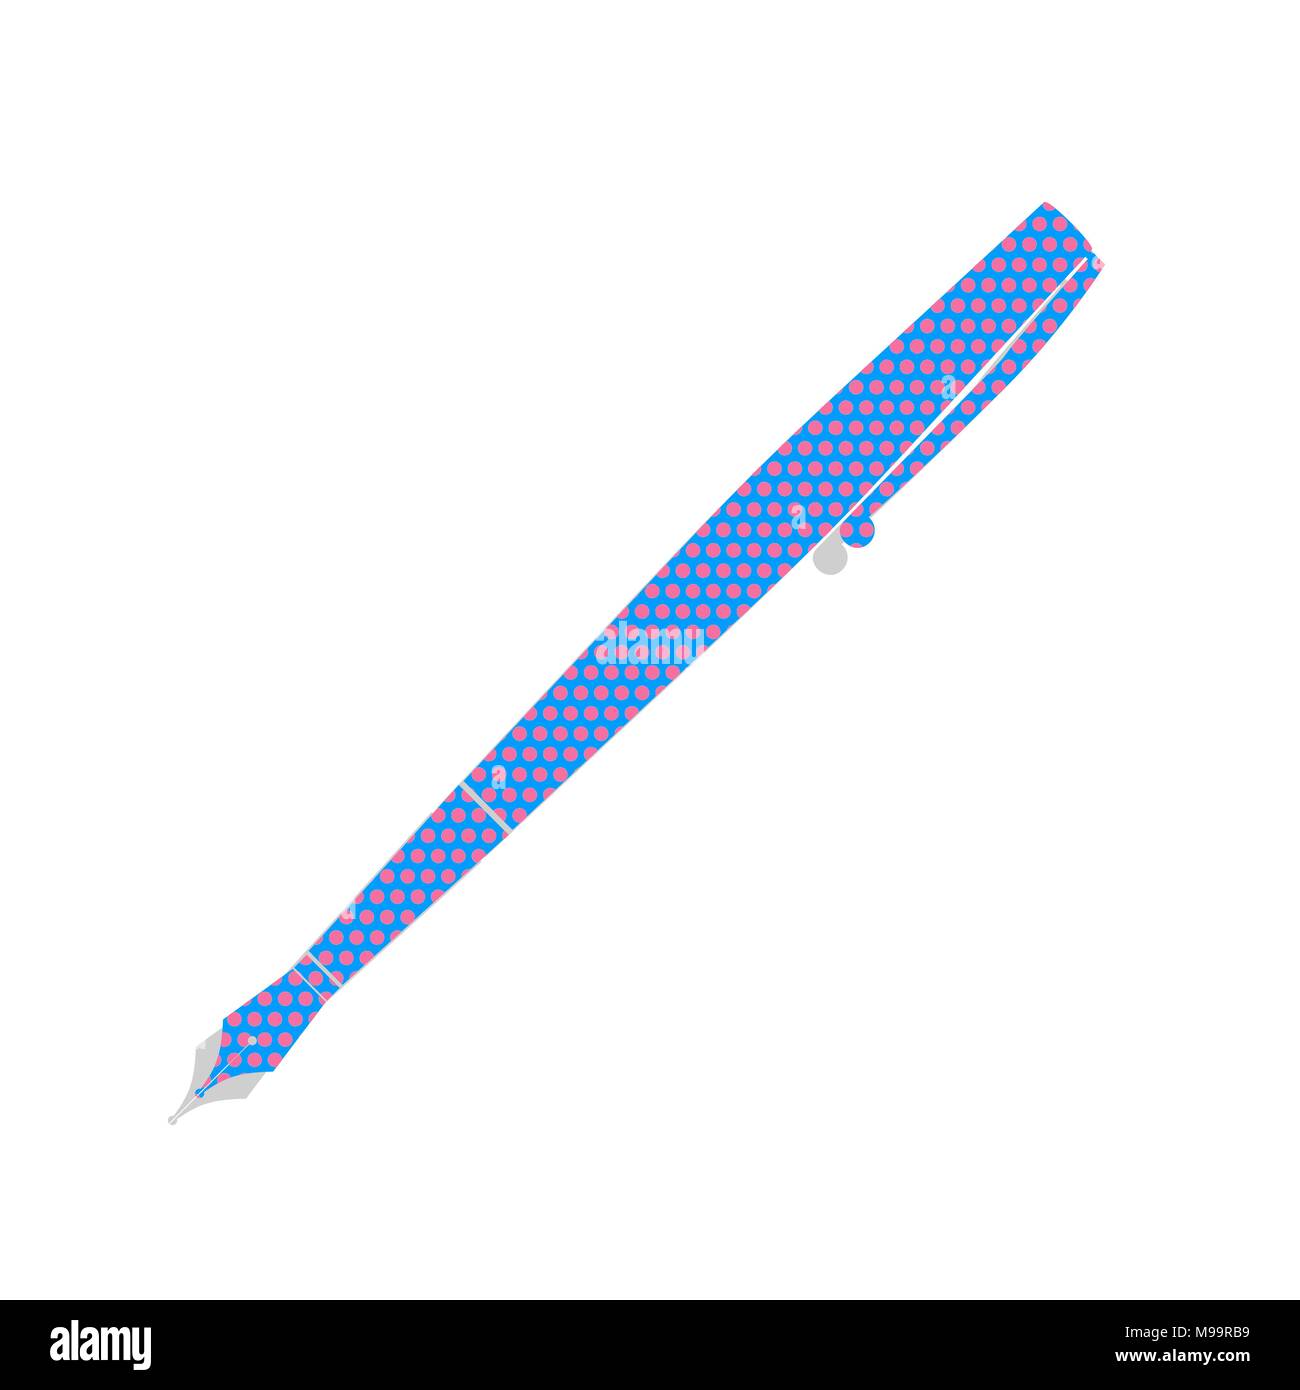 Pen zeichen Abbildung. Vektor. Neon Blau Symbol mit Cyclamen Polka Dots Muster mit hellgrauen Schatten auf weißem Hintergrund. Isoliert. Stock Vektor